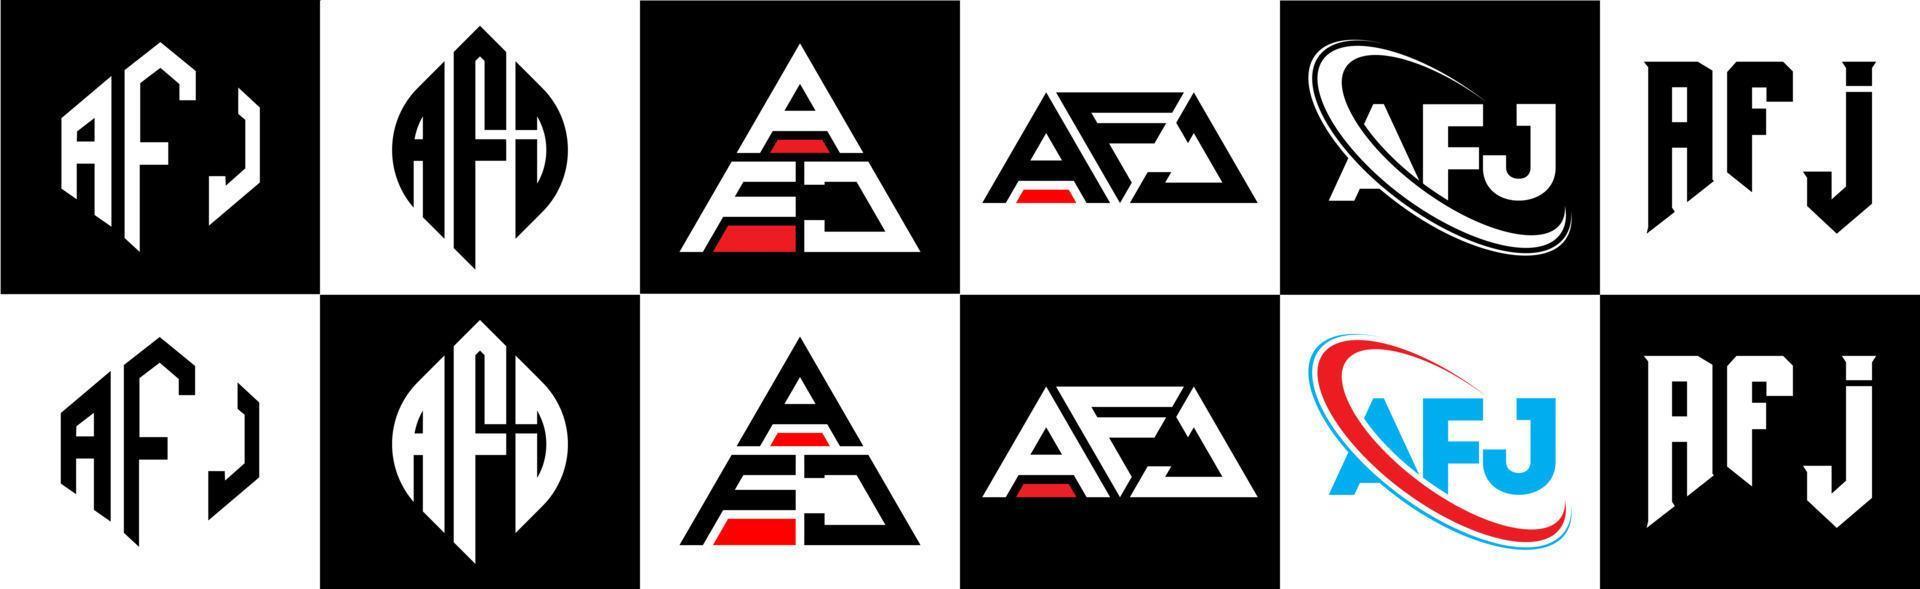 afj-Buchstaben-Logo-Design in sechs Stilen. afj polygon, kreis, dreieck, sechseck, flacher und einfacher stil mit schwarz-weißem buchstabenlogo in einer zeichenfläche. afj minimalistisches und klassisches logo vektor